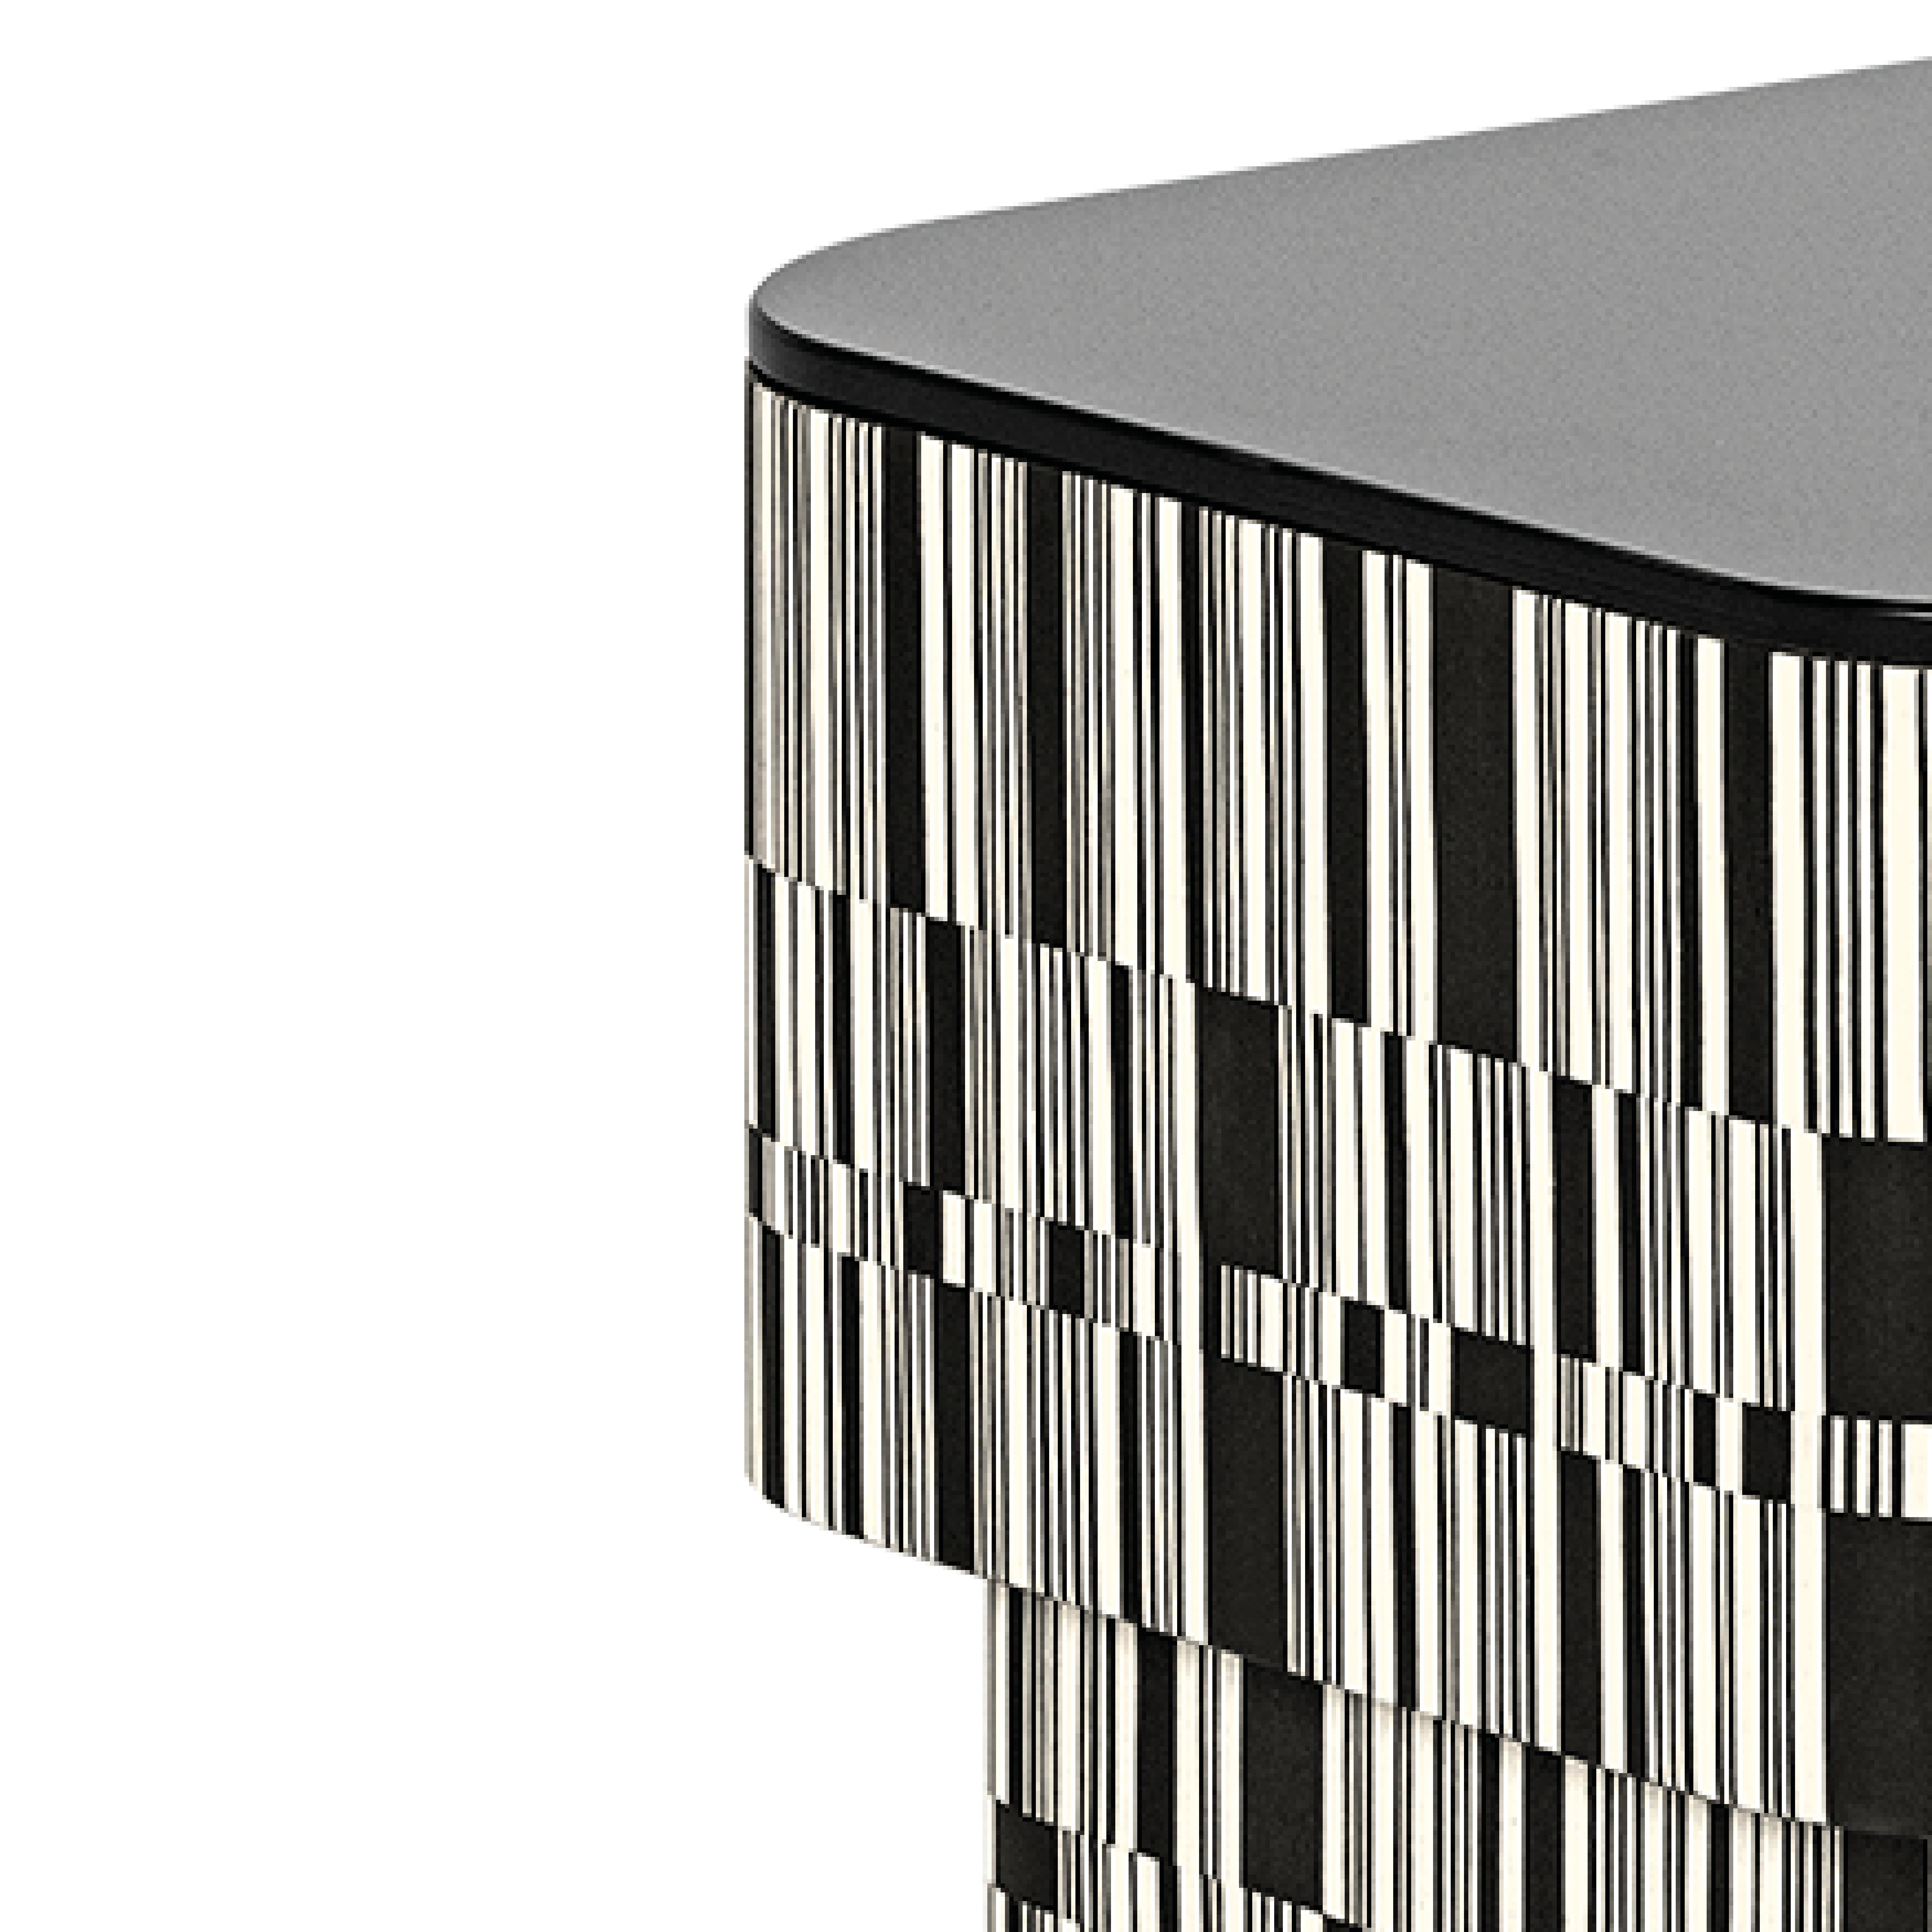 La structure de la table d'appoint Enigma est revêtue de bois, traité avec une incrustation en fil croisé avec des nuances blanches et noires qui s'alternent de manière irrégulière. Il présente une finition Matrix mate et un plateau en verre noir.